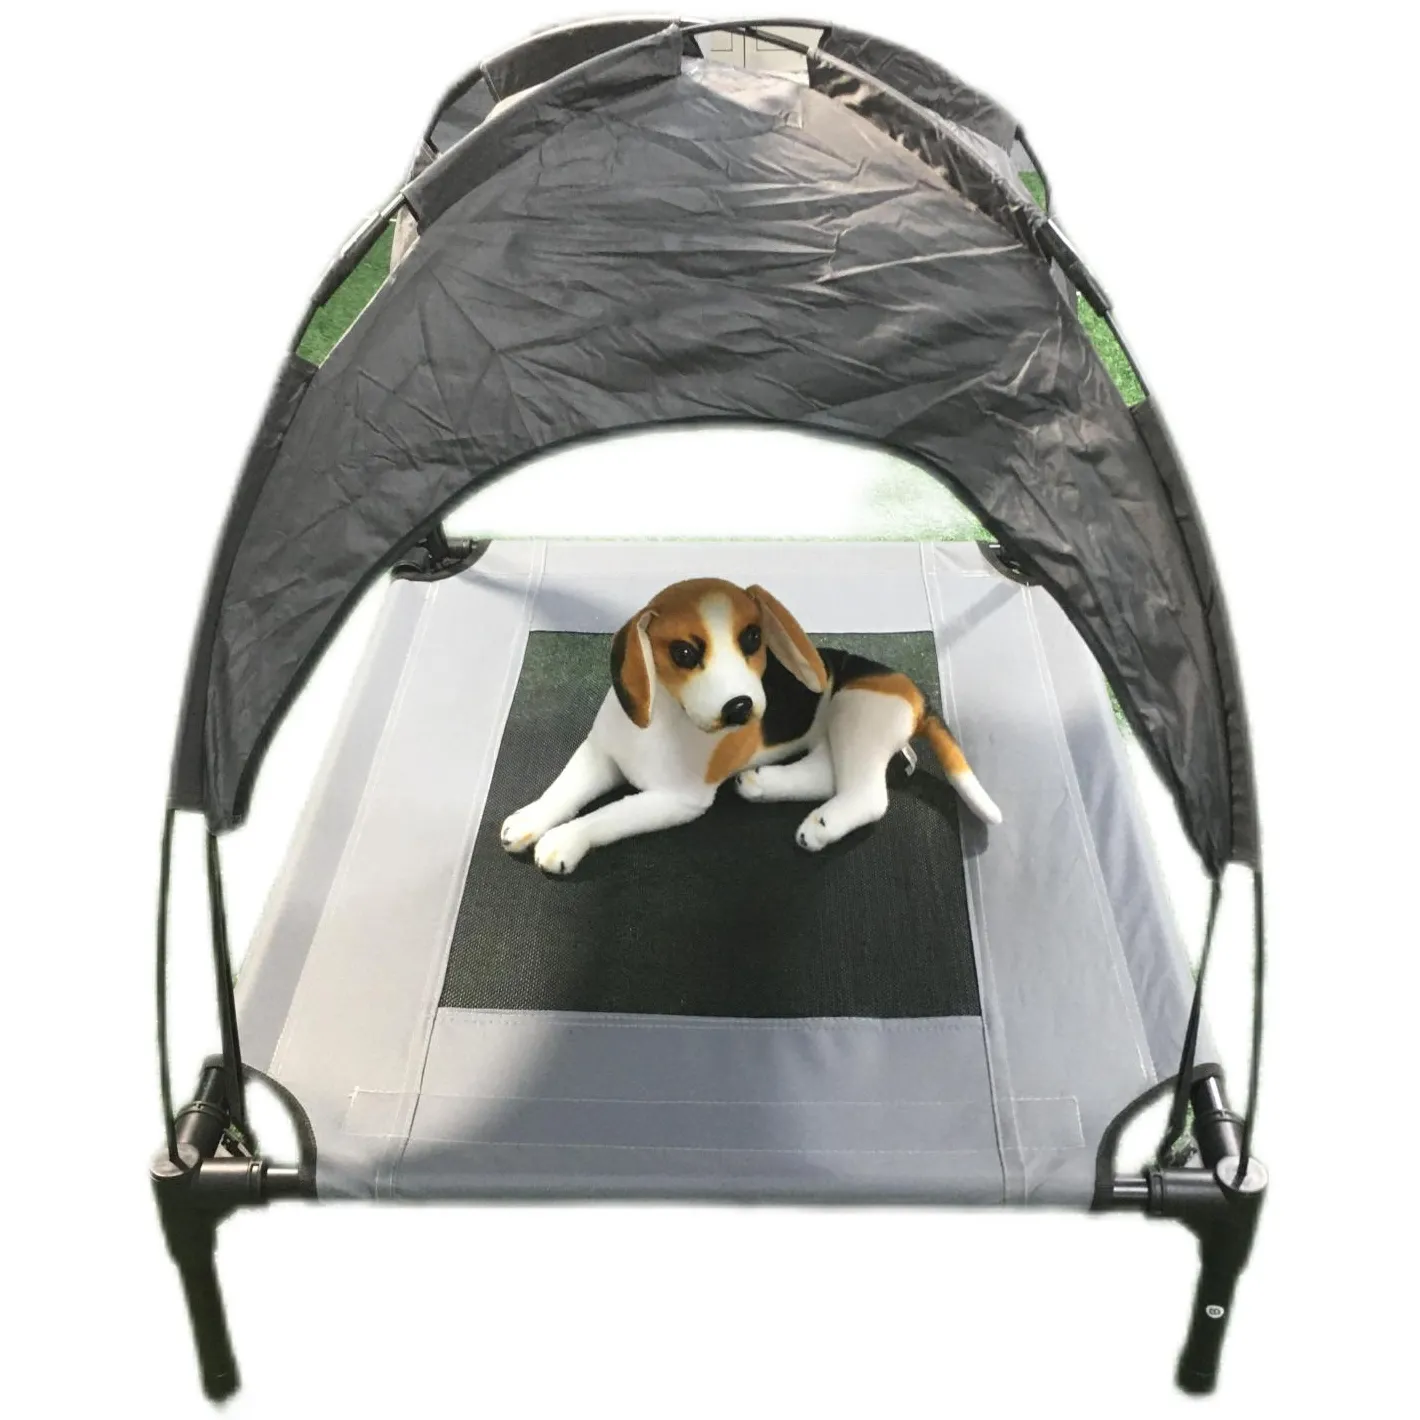 Cama Do Cão Refrigeração Exterior Indoor Elevated Pet Air Cot Com Removível Canopy Shade Tent